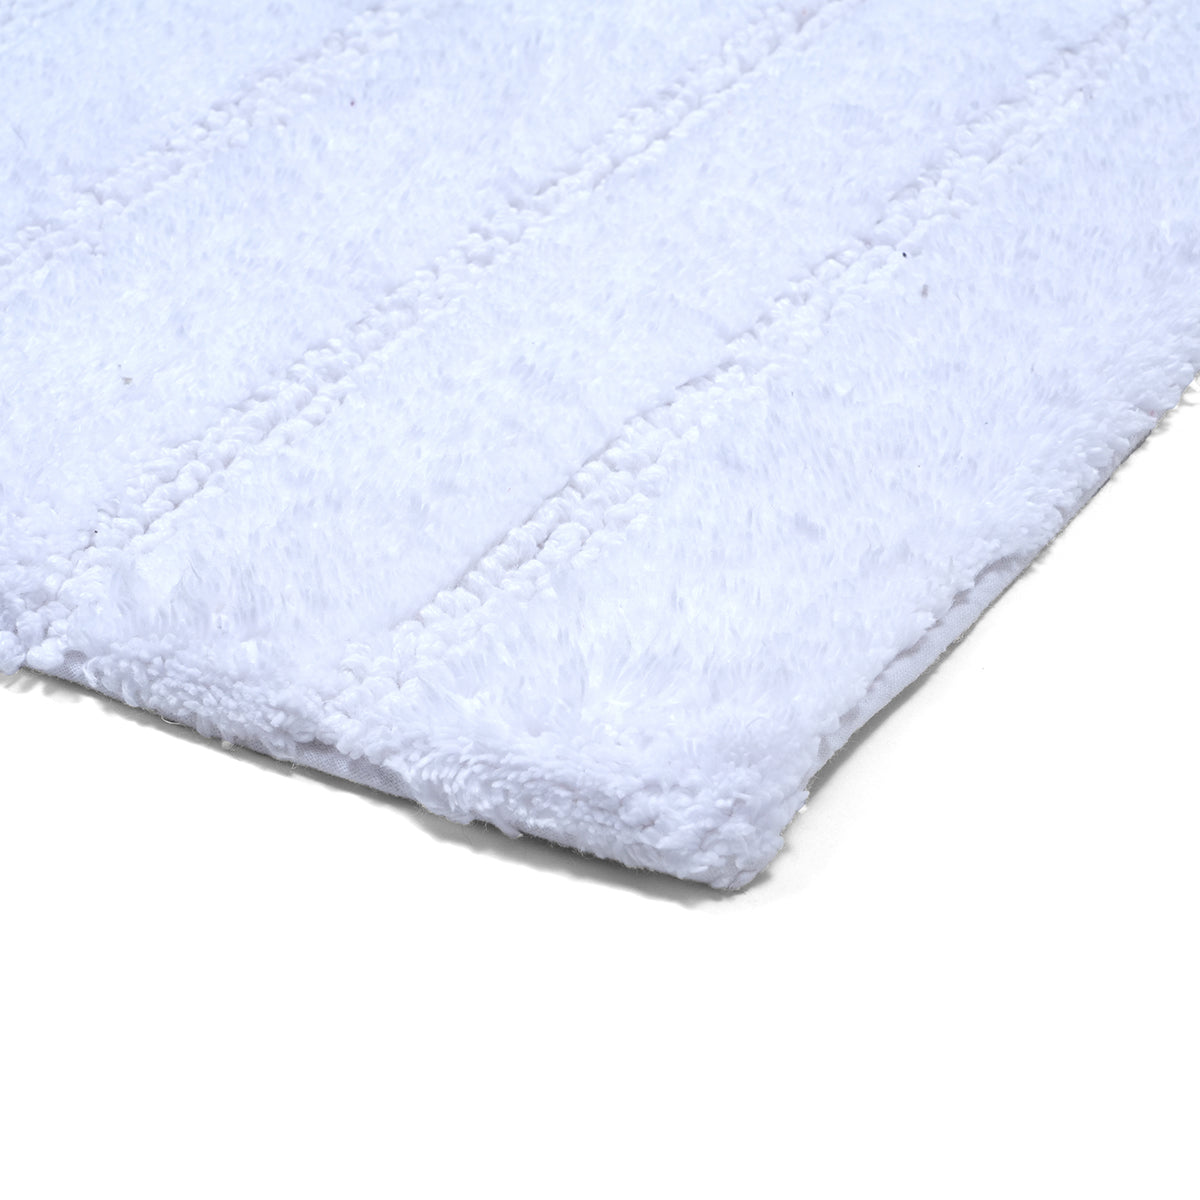 Outline Mop Tufted 100% Cotton 1PC Bath Mat